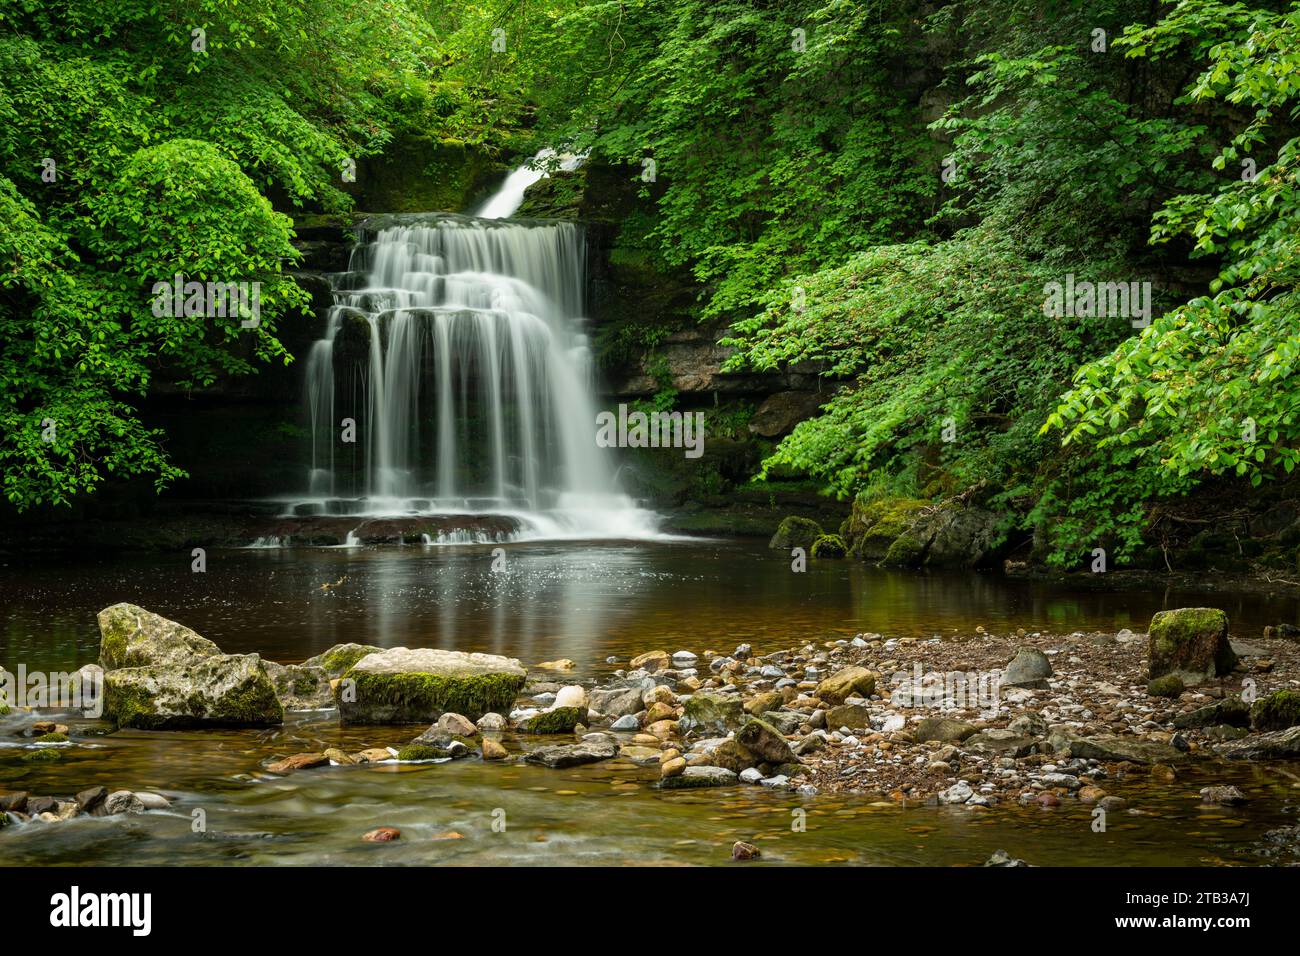 Cascade de Cauldron Falls dans le village de West Burton, parc national des Yorkshire Dales, Yorkshire, Angleterre. Printemps (juin) 2022. Banque D'Images